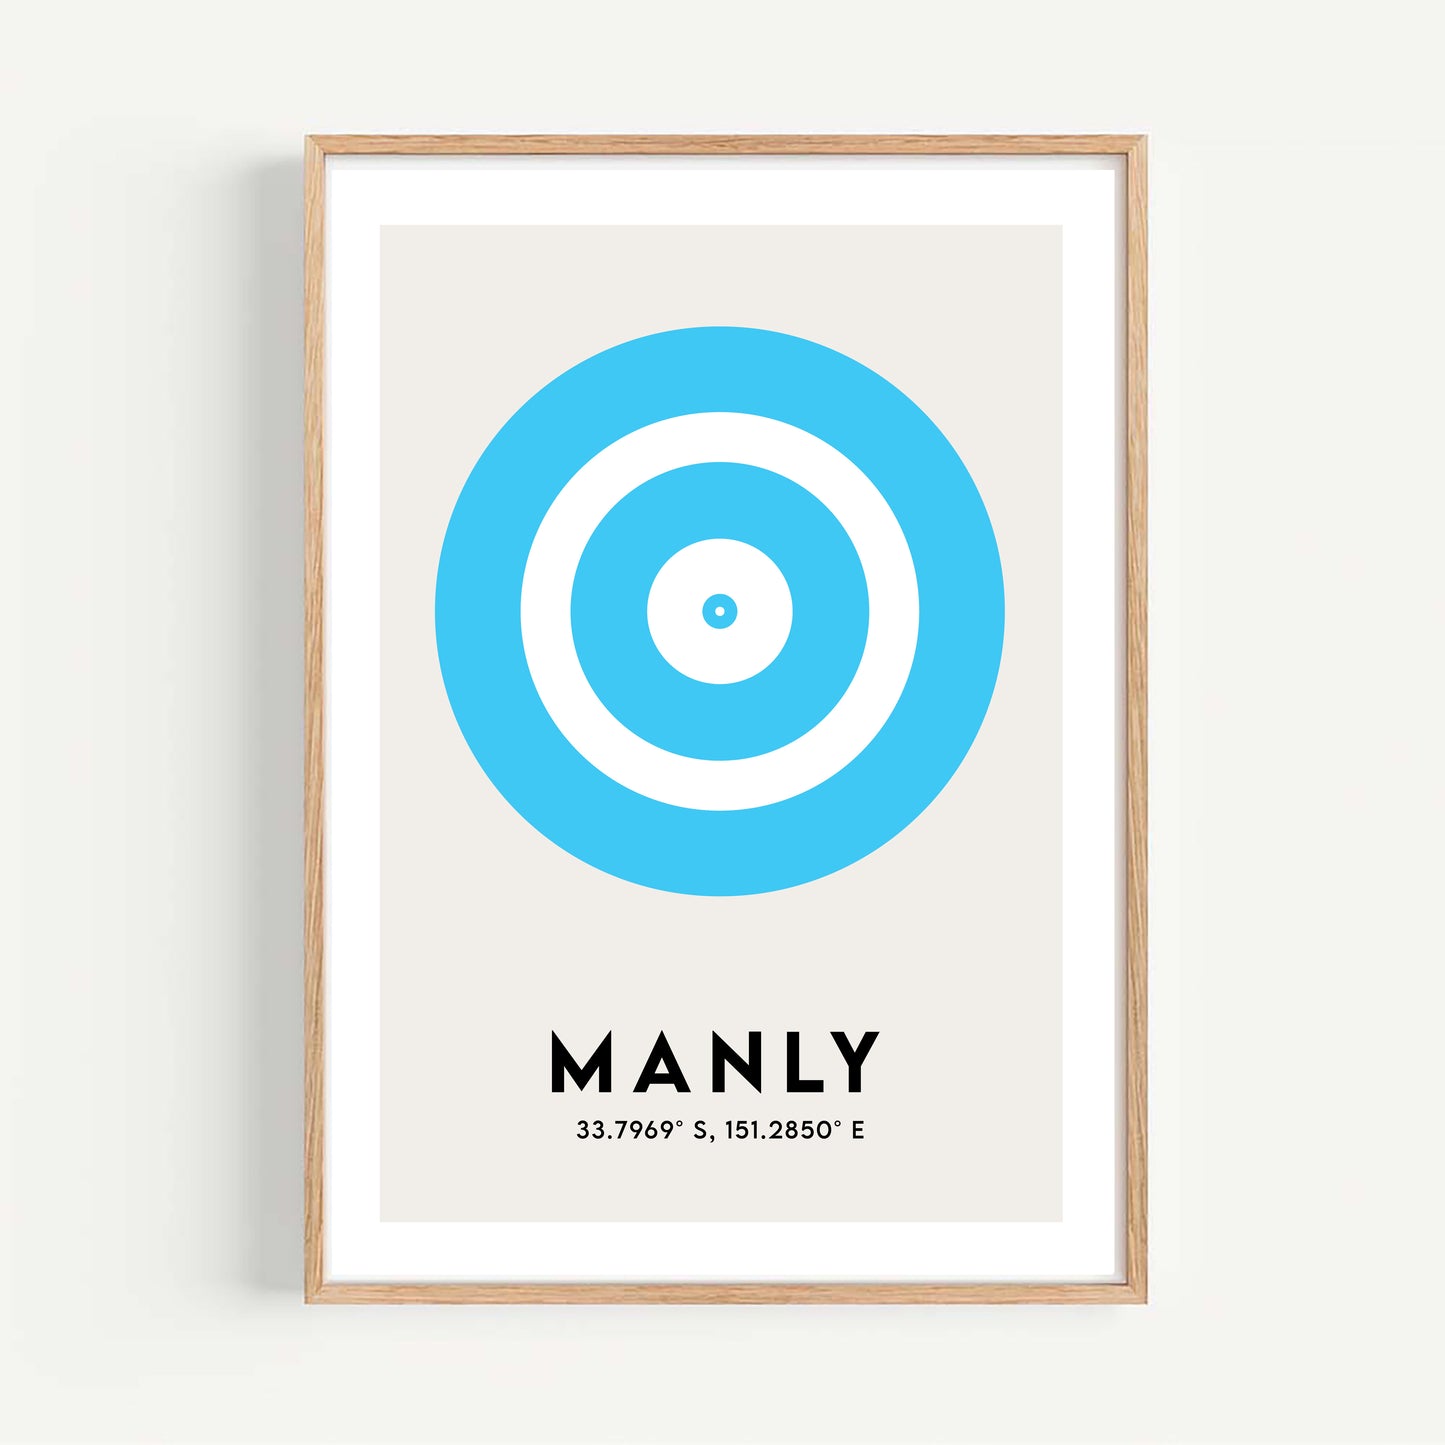 Origin 'Manly'